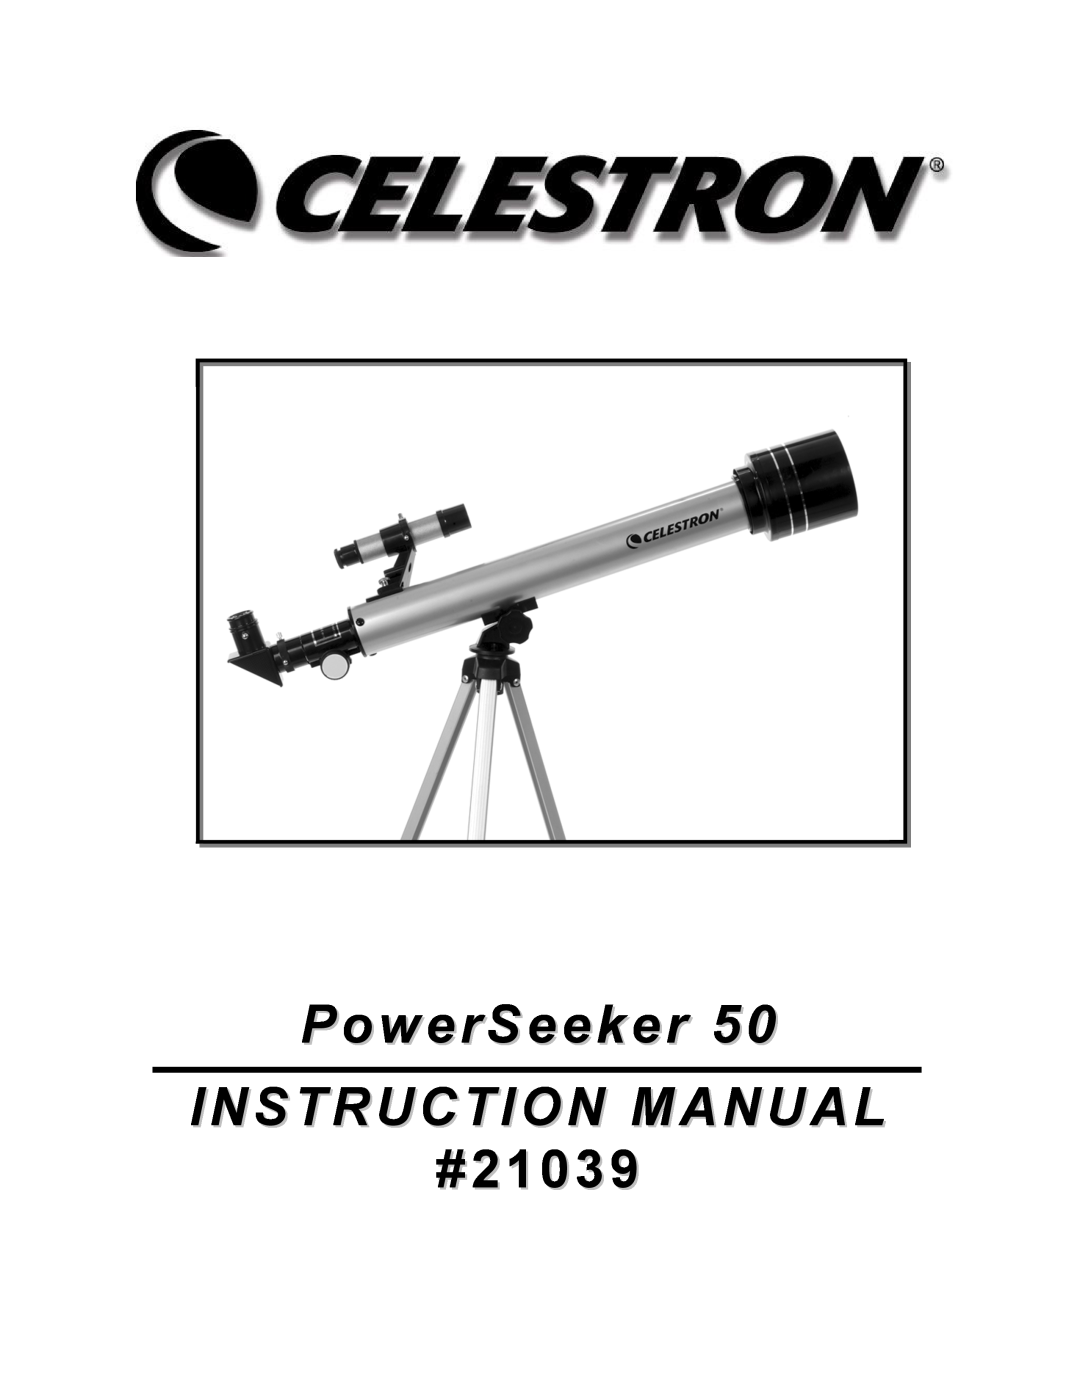 Celestron Power Seeker 50 manual #21039 